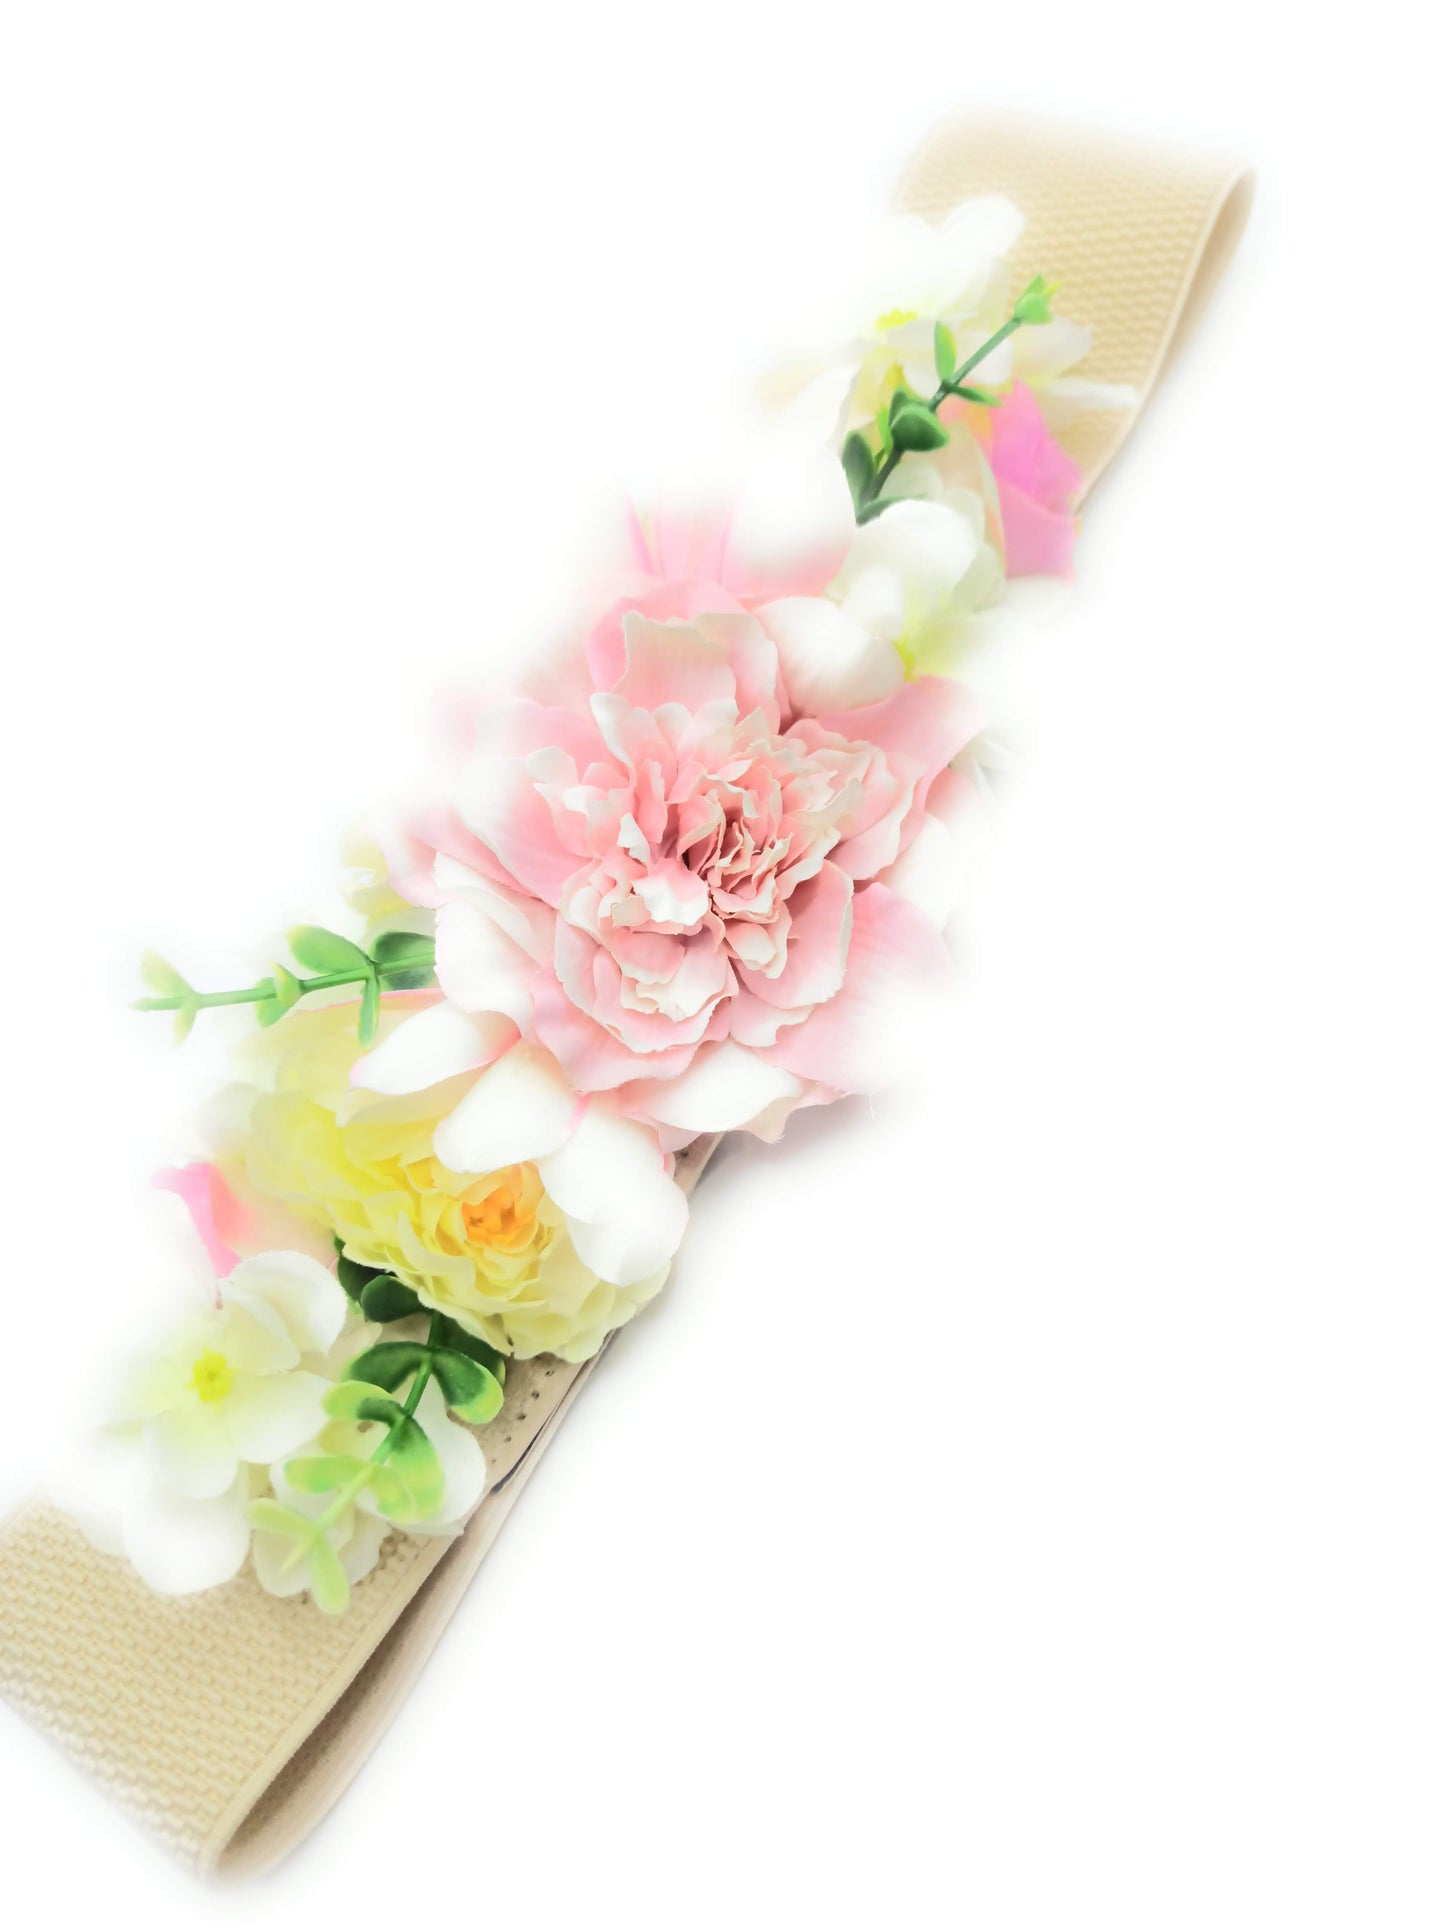 Cinturón de Flores · Cinta Beis, Flores Rosa